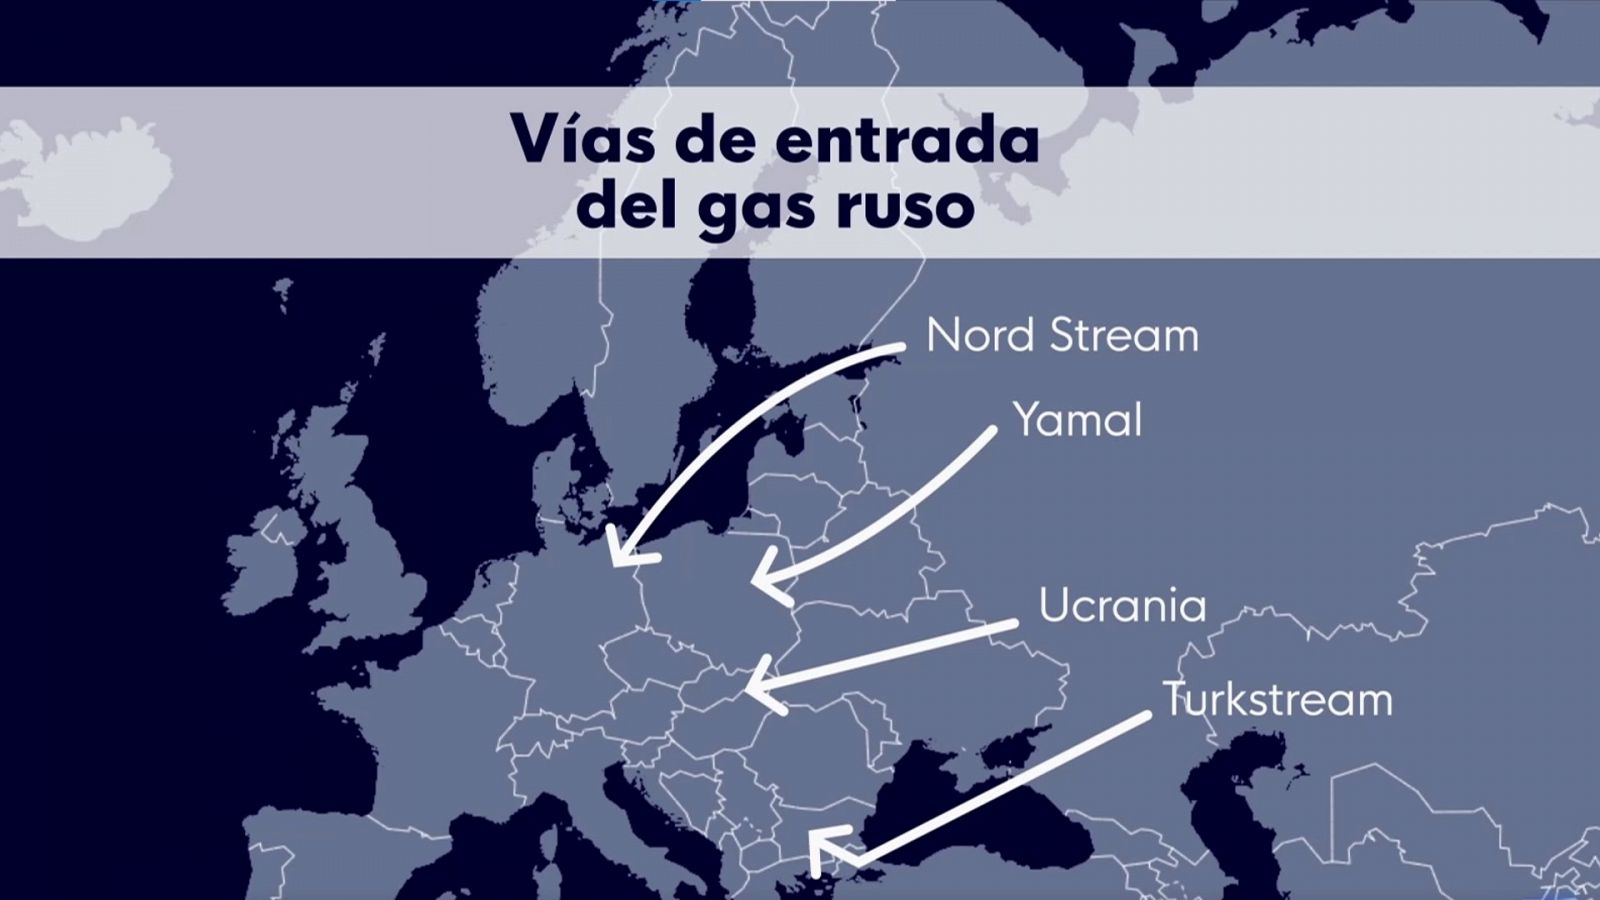 Las vías de entrada del gas ruso a Europa